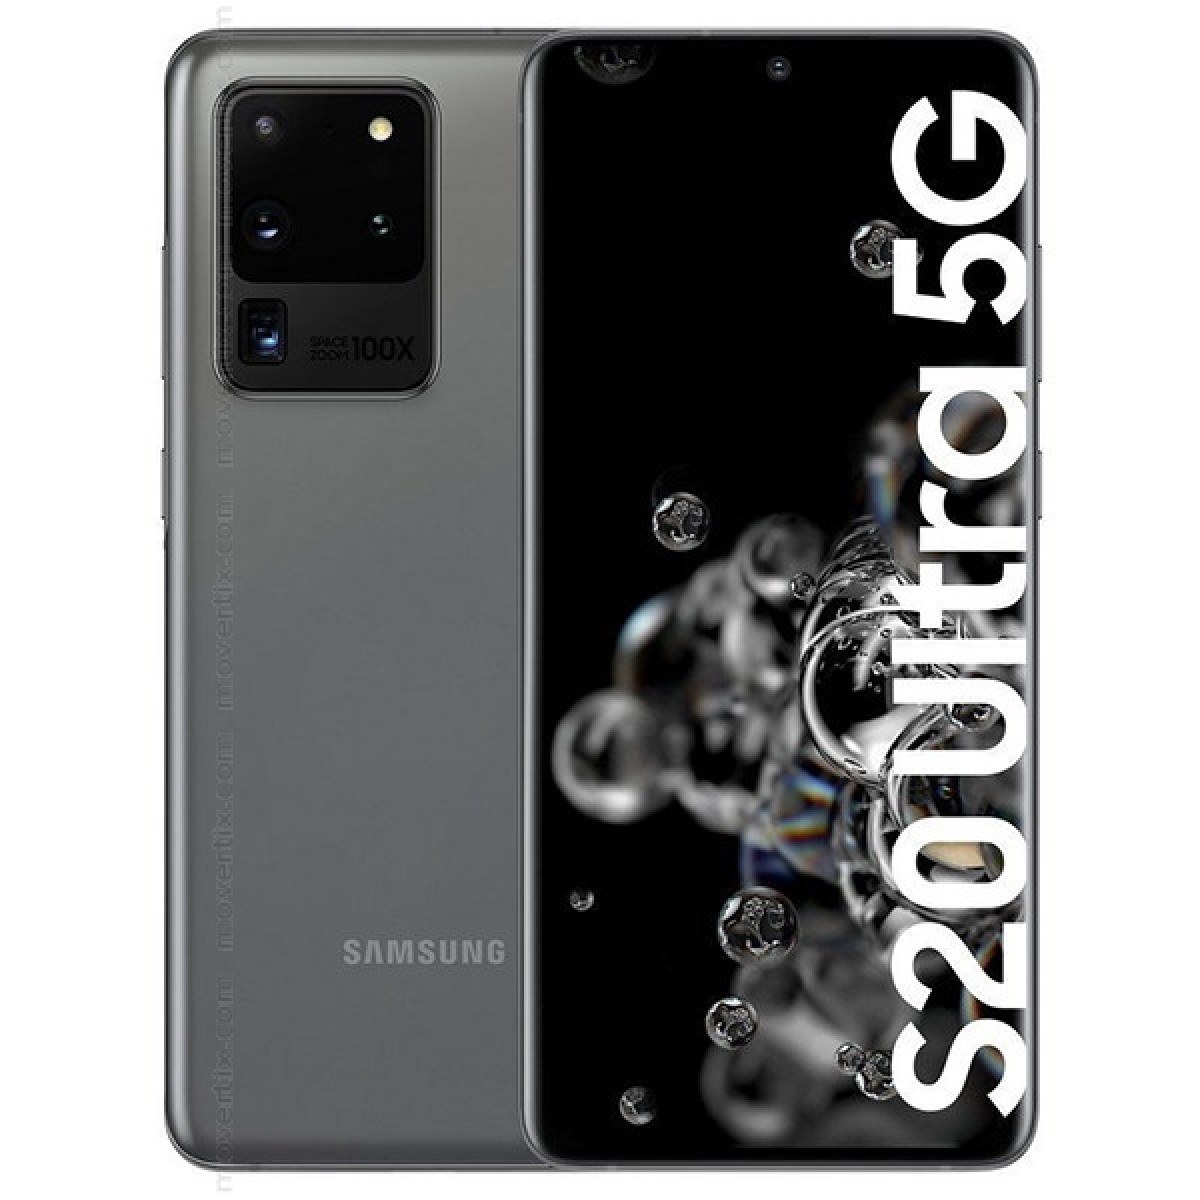 Samsung Galaxy S20 Ultra 5G G9880 Grey 512GB 16GB RAM Exynos 990